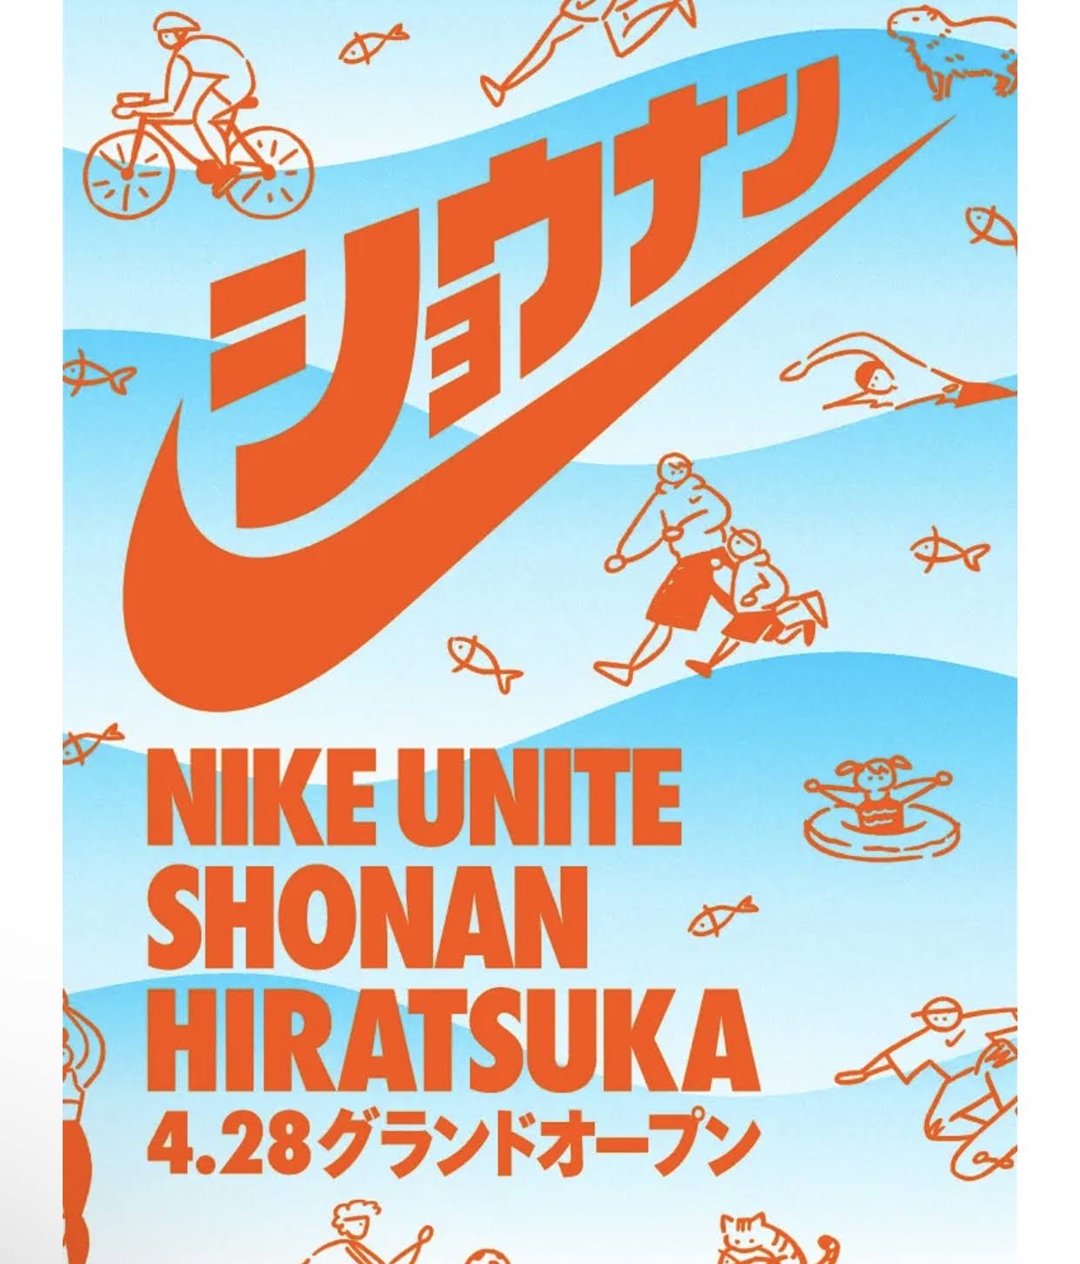 ナイキの地域密着型ストア「NIKE UNITE SHONAN HITATSUKA」が4/28 オープン (ユナイト 湘南 平塚)